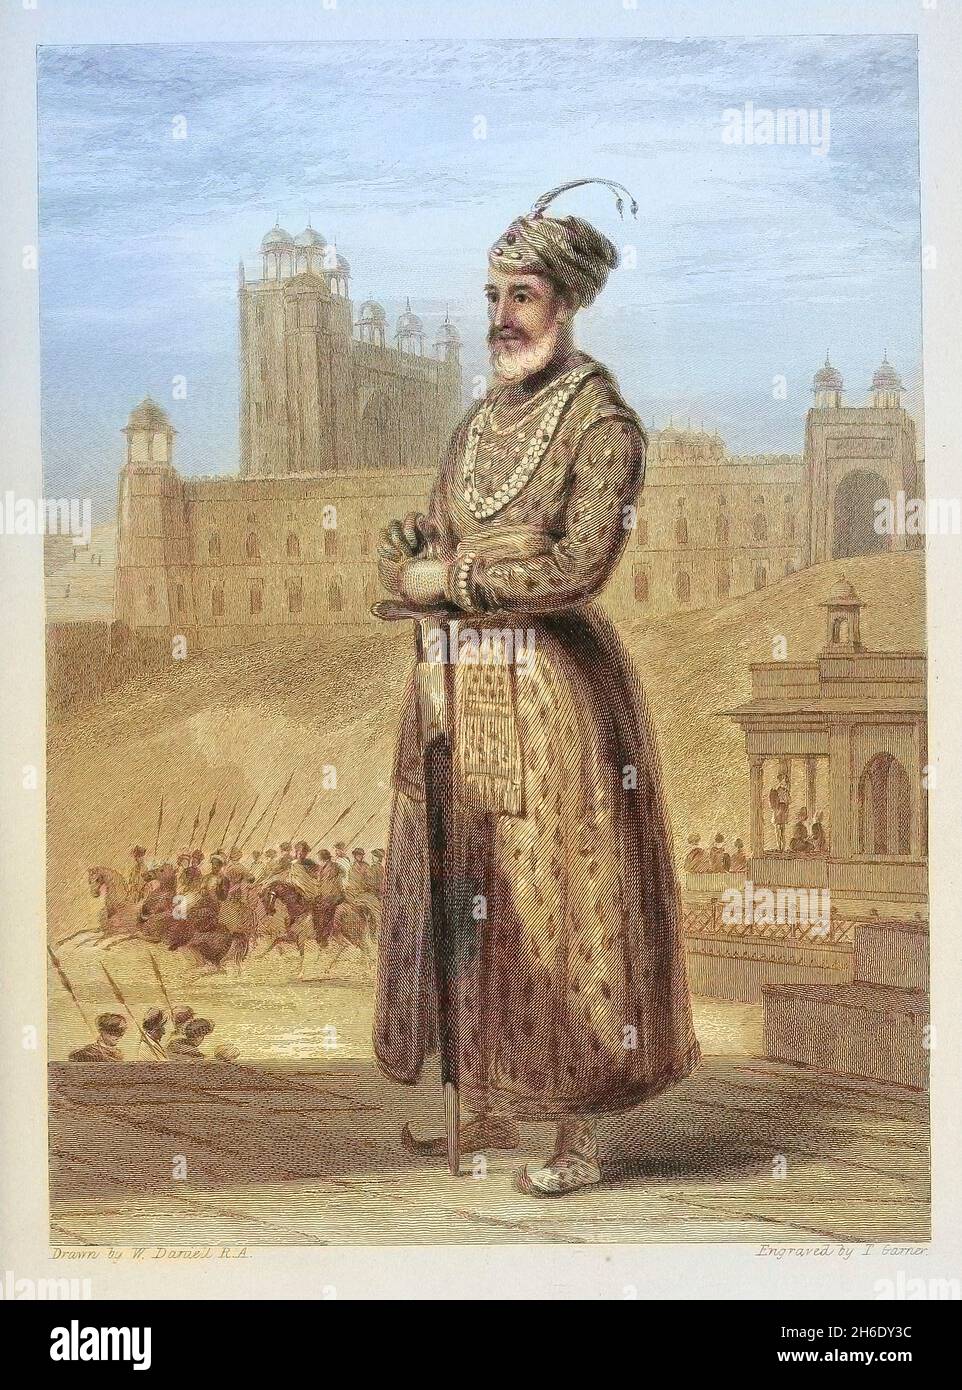 Machine colorisée Abu'l-Fath Jalal-ud-din Muhammad Akbar (25 octobre 1542 – 27 octobre 1605), connu sous le nom de Akbar le Grand (Akbar-i-azam), et aussi comme Akbar I a été le troisième empereur moghol, qui a régné de 1556 à 1605.Akbar a succédé à son père, Humayun, sous un régent, Bairam Khan, qui a aidé le jeune empereur à étendre et à consolider les domaines de Mughal en Inde.D'après le livre « The Oriental Annual, or, Scenes in India » du rév. Hobart Caunter publié par Edward Bull, Londres 1838 gravures de dessins de William Daniell Banque D'Images